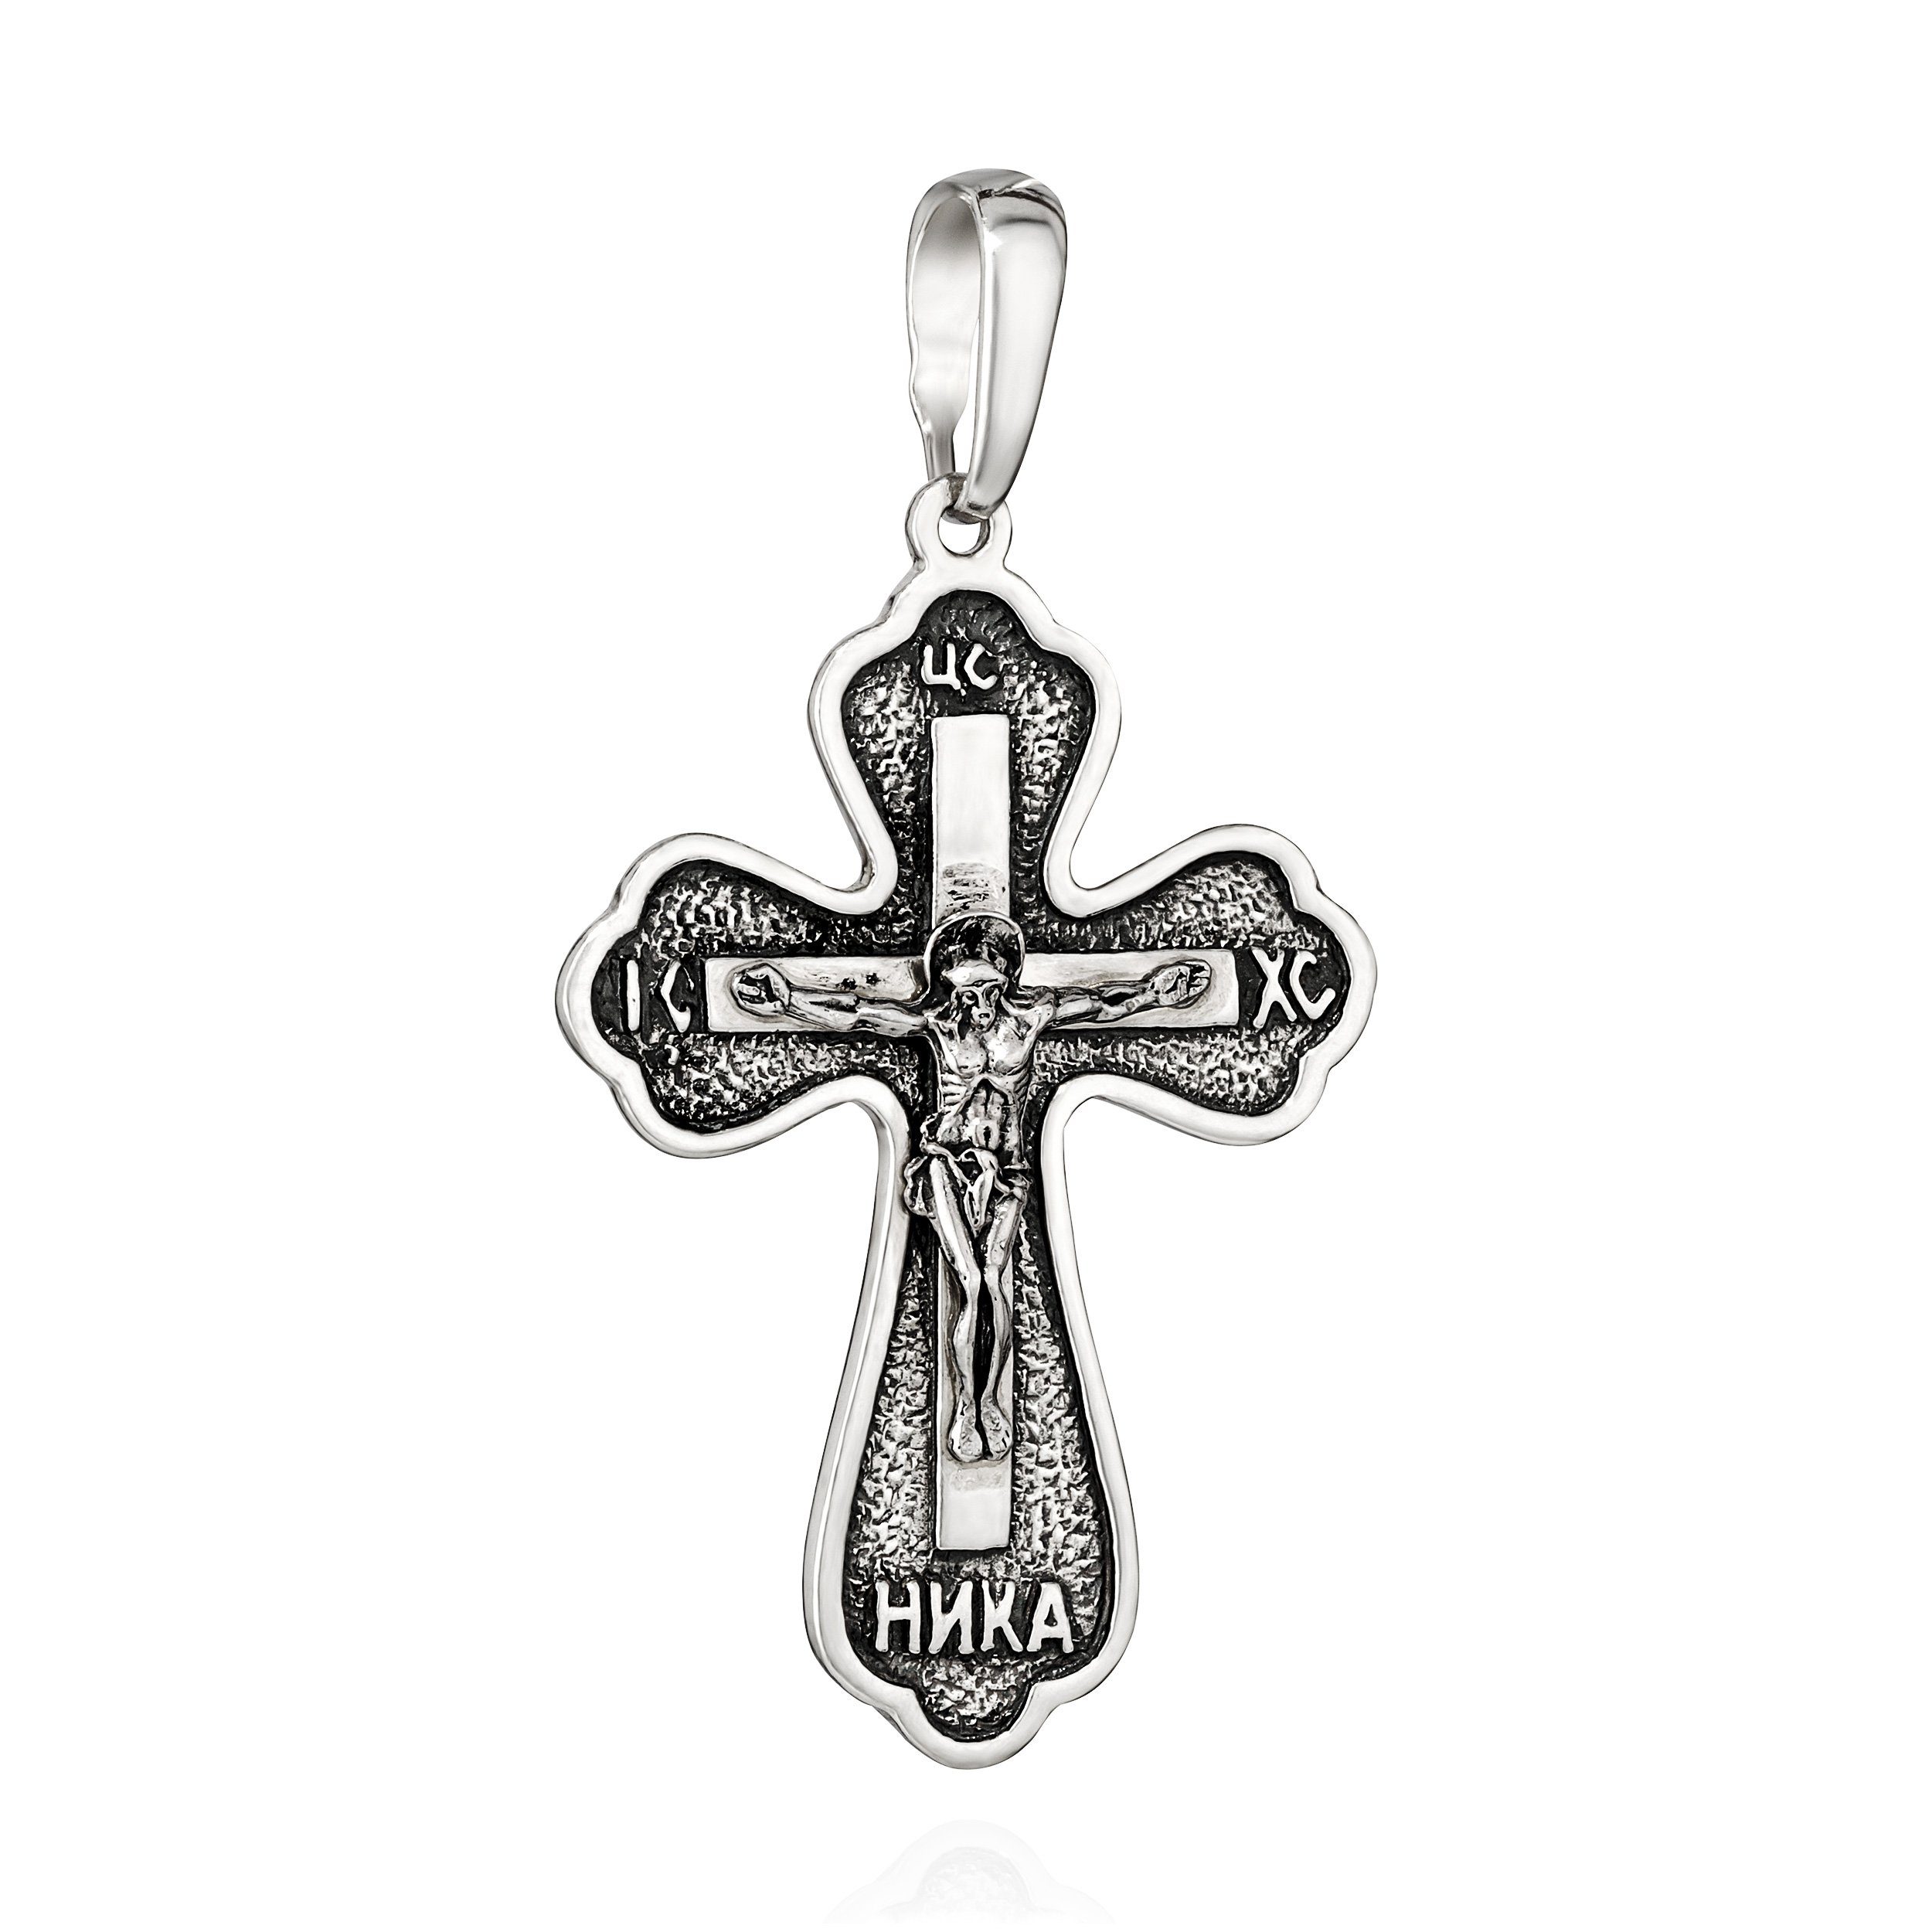 NKlaus Kettenanhänger Kreuzanhänger 925 Silber 34mm x 24mm Kruzifix Jesus Christus Motiv